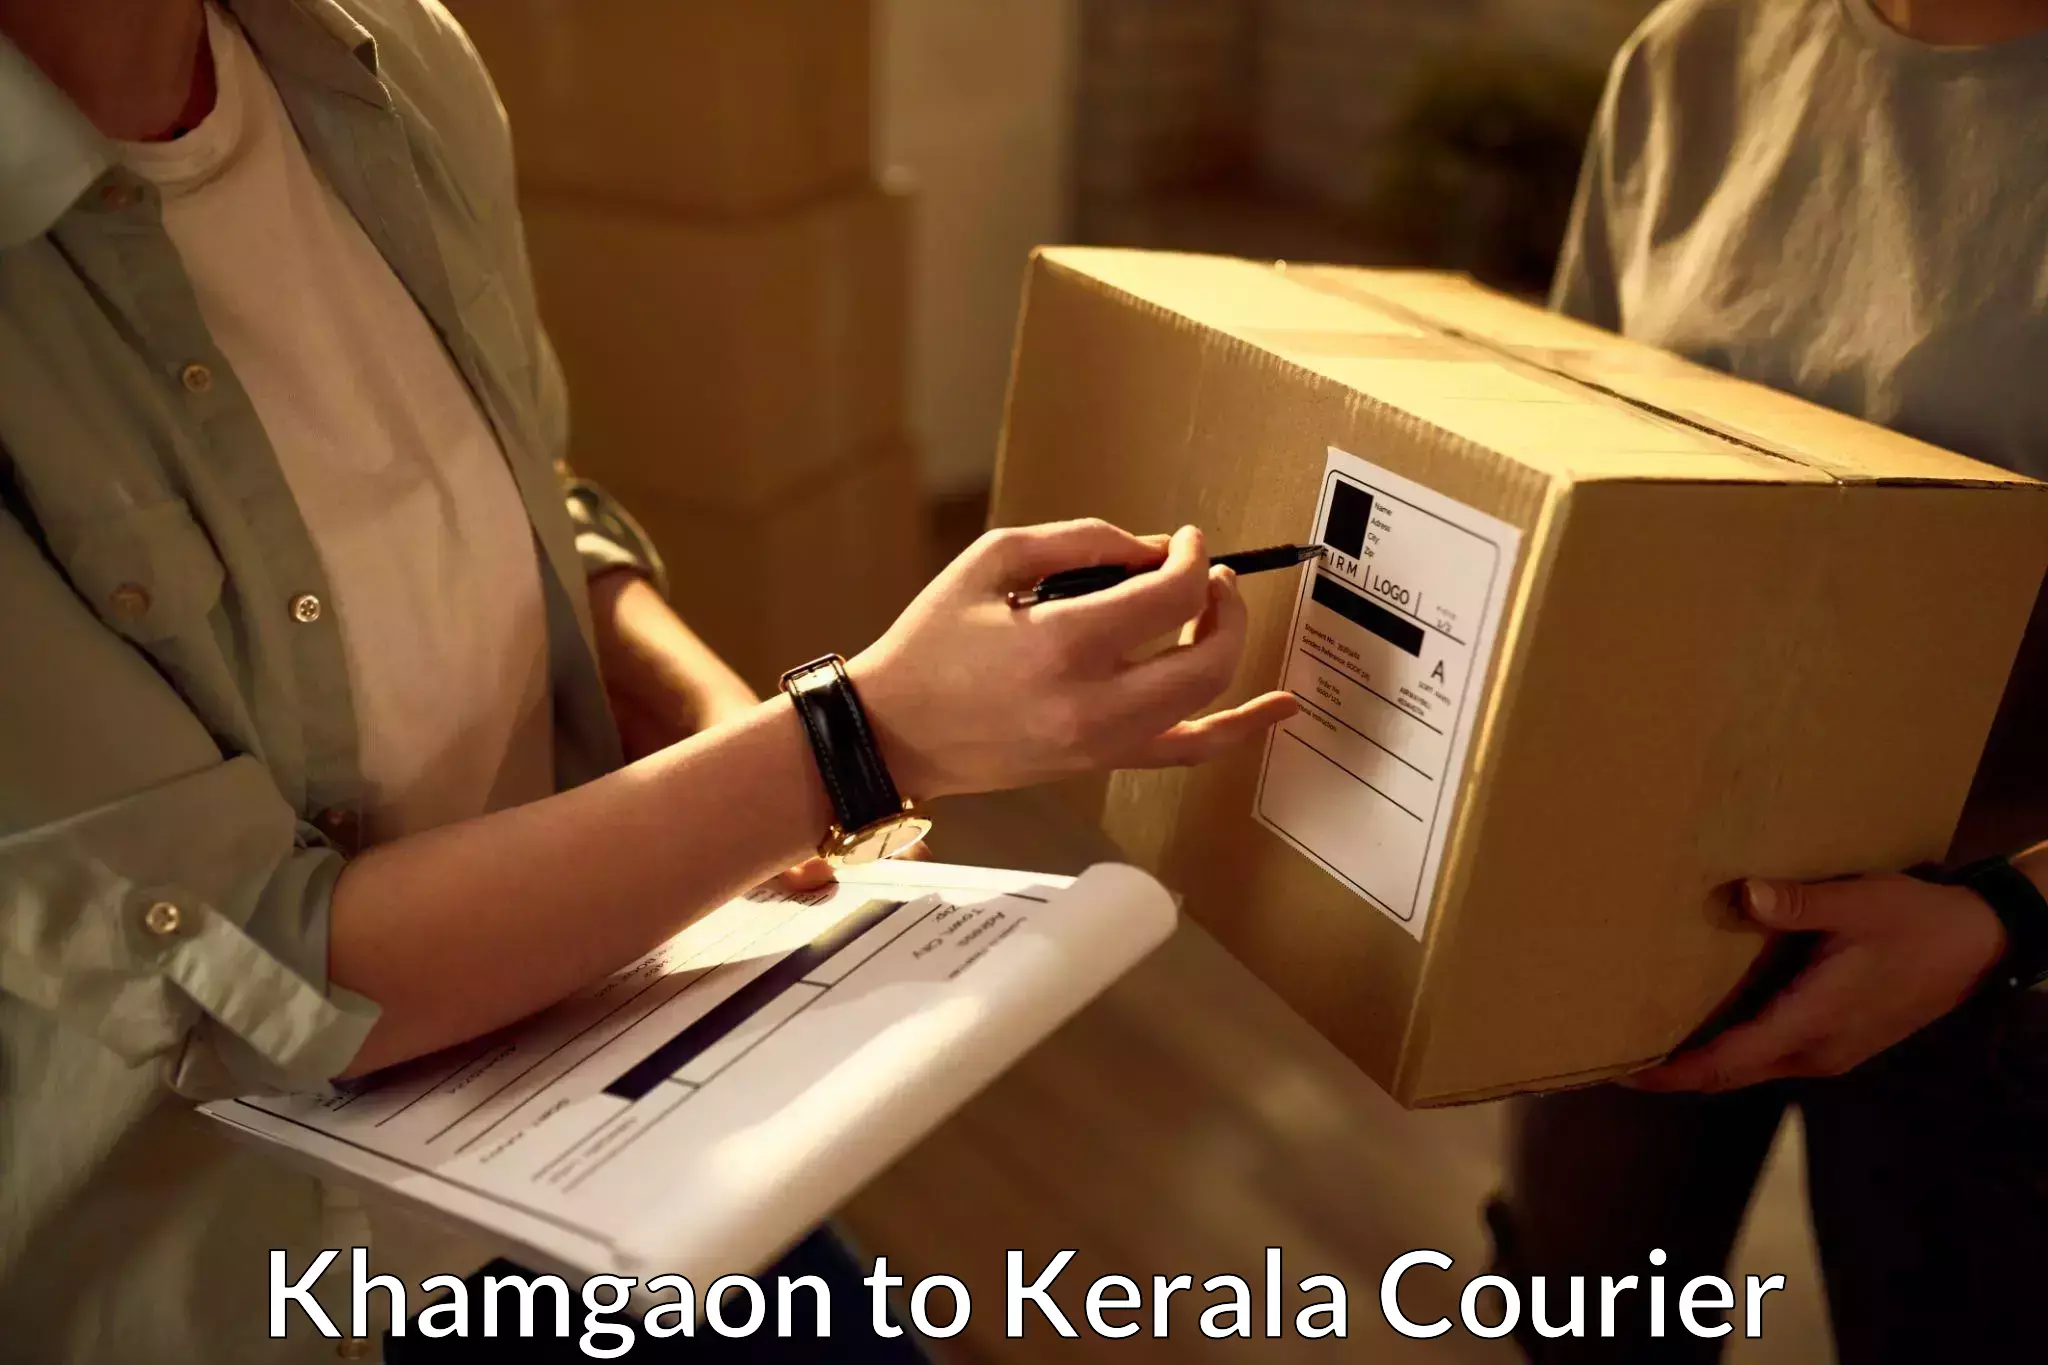 Urgent courier needs Khamgaon to Adimali